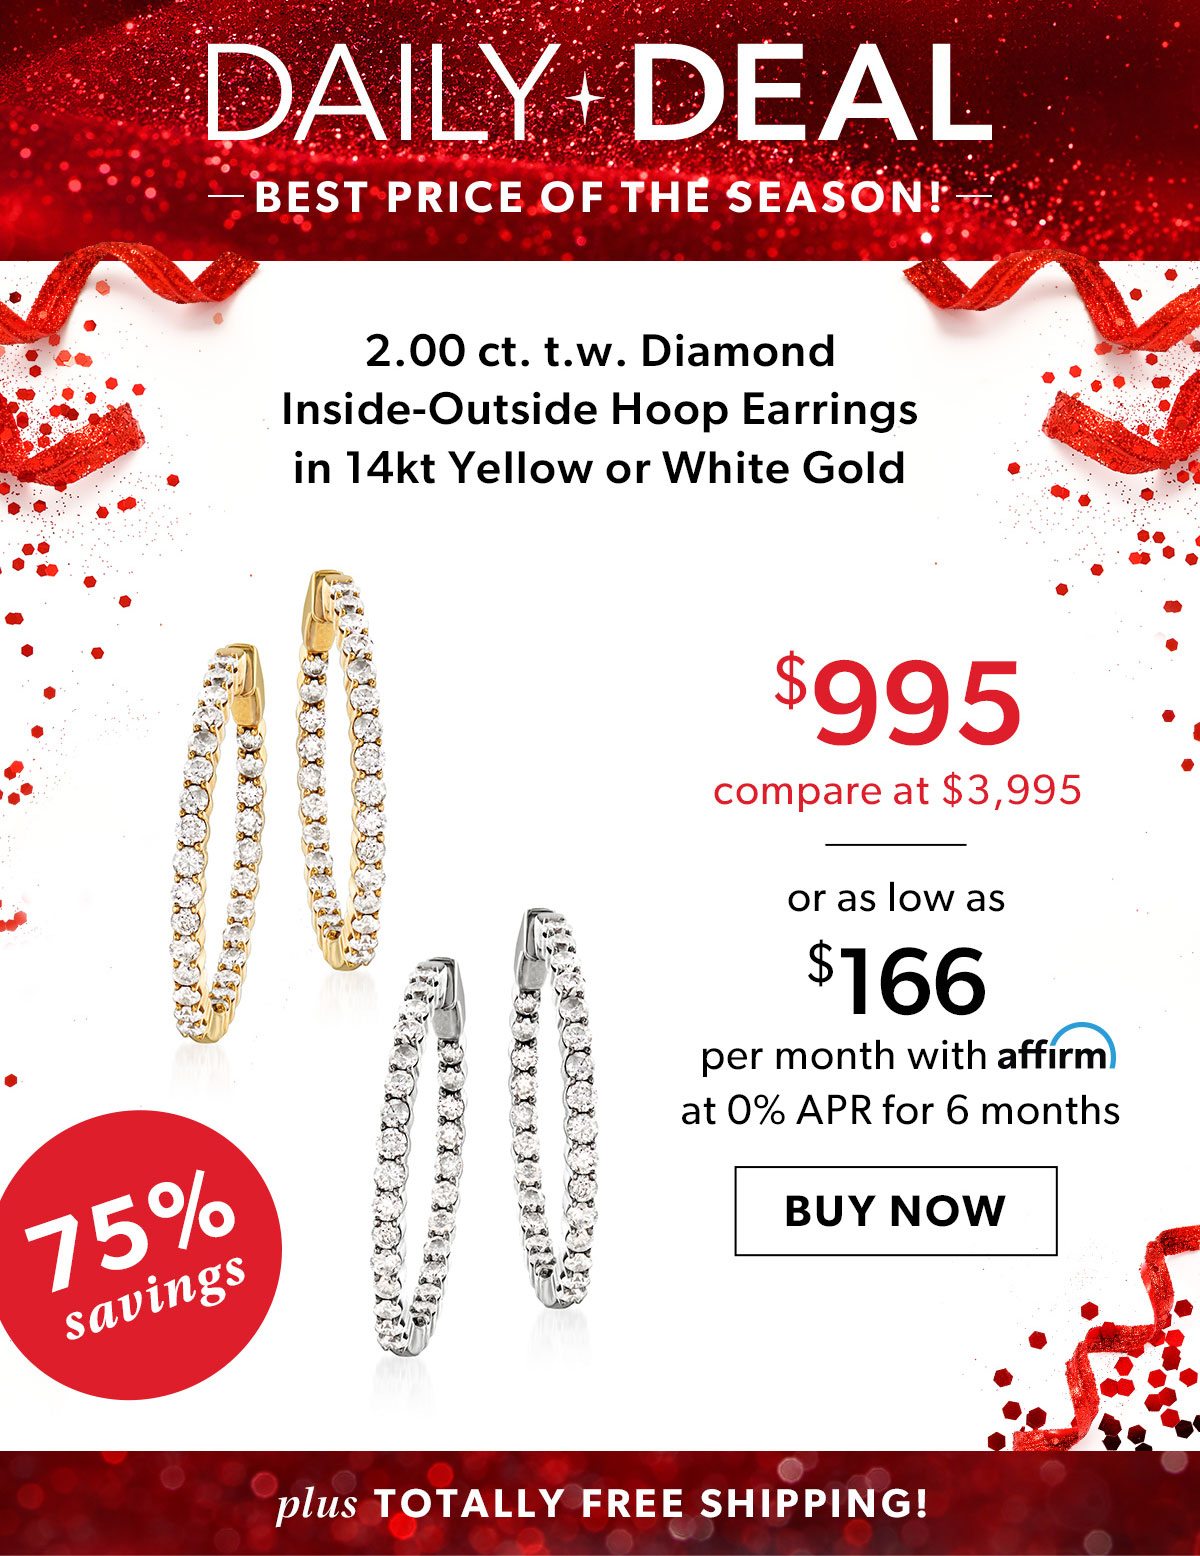 2.00 ct. t.w. Diamond Inside-Outside Hoop Earrings. $995. Buy Now